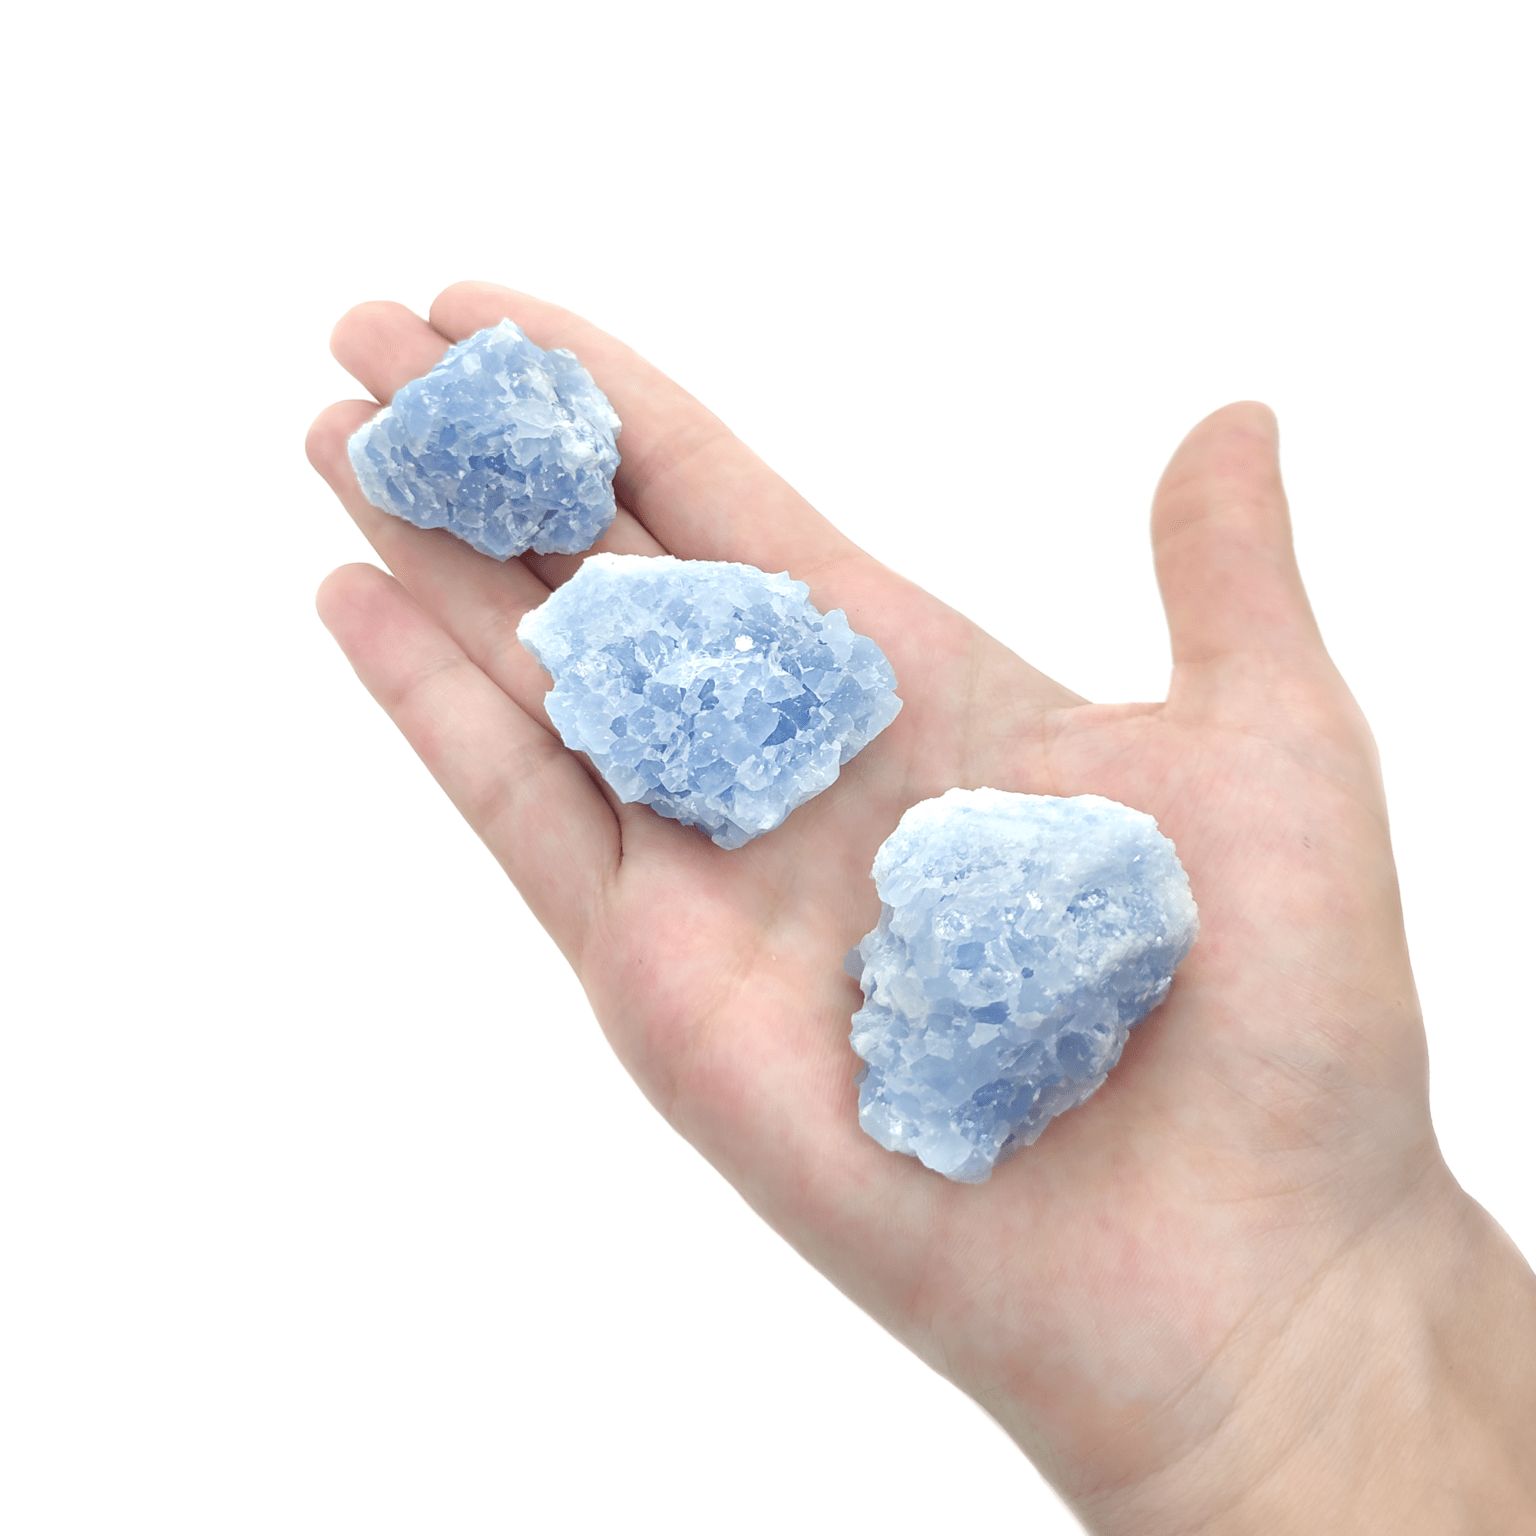 Produktpräsentation von blauen Calcit Steinen. Die Rohsteine weisen ausgeprägte Kristalle auf.